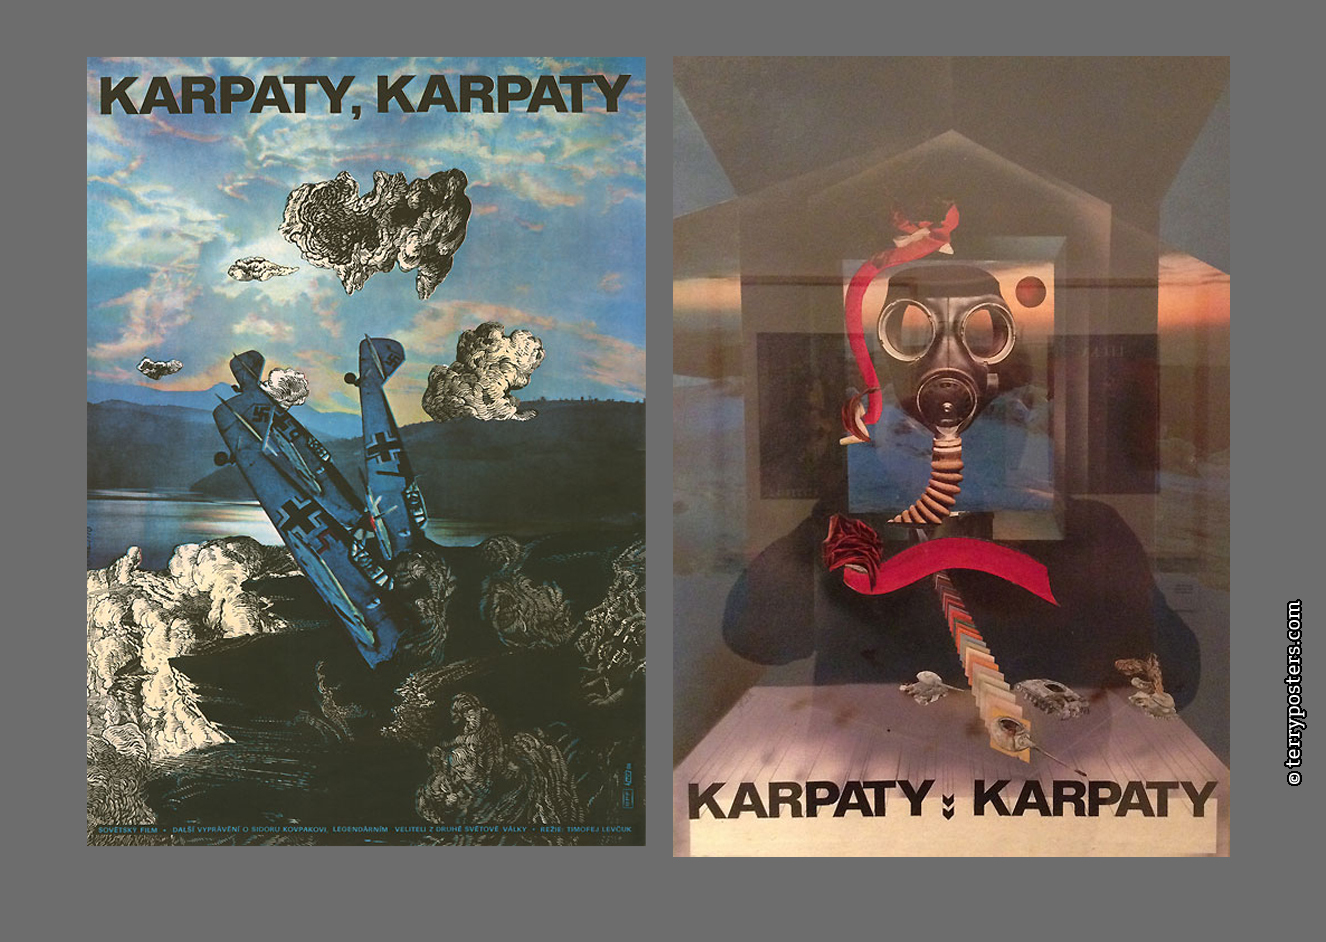 Karpaty, karpaty 1978